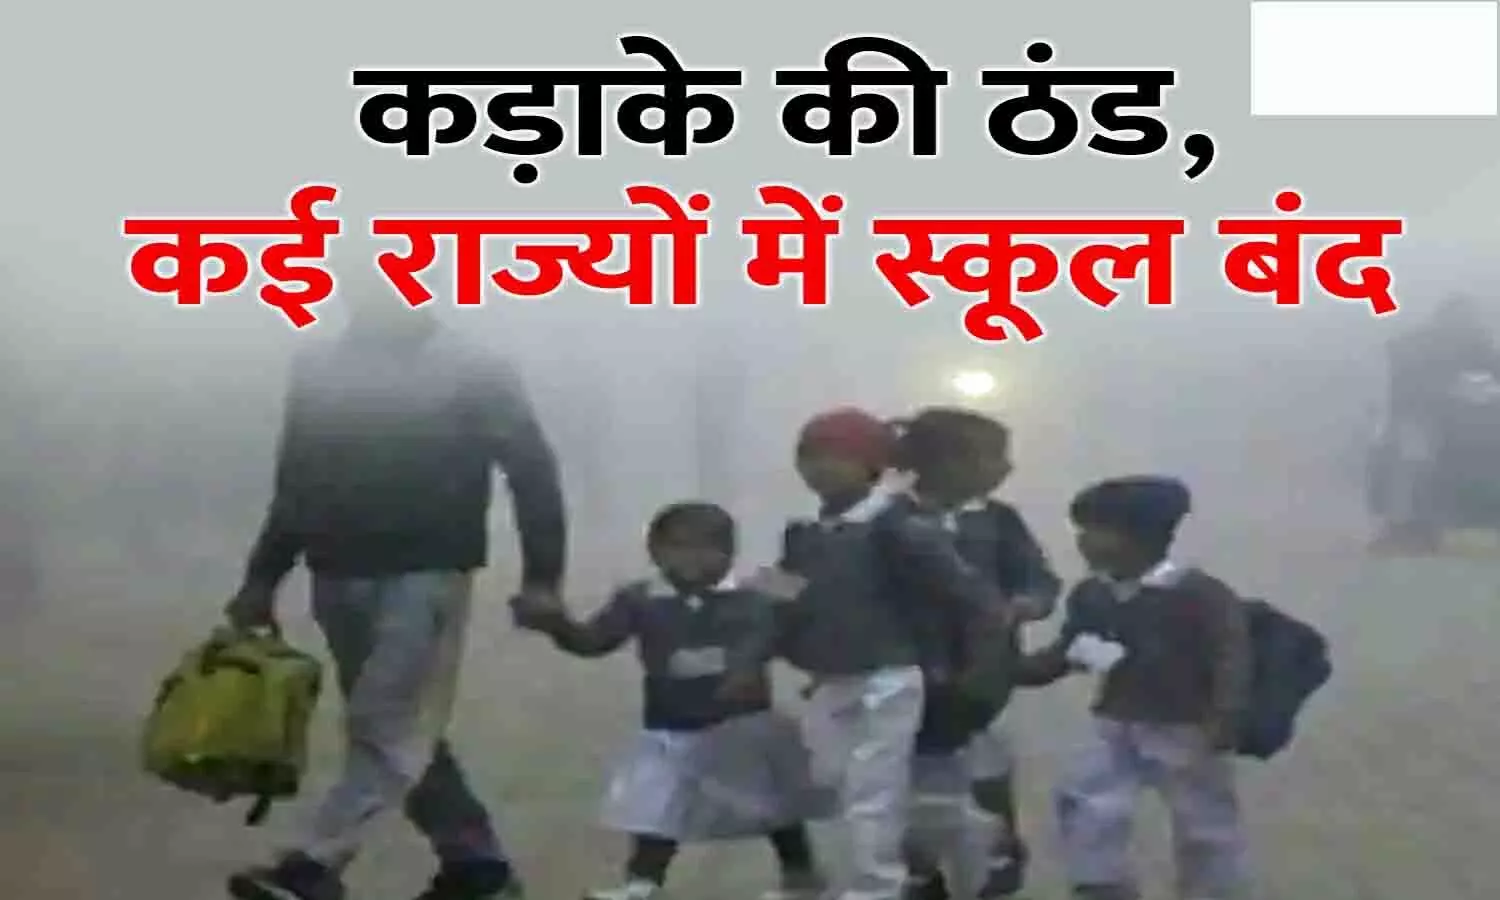 Jharkhand School Winter Vacation: भारी ठंड के वजह से बंद रहेंगे झारखण्ड के सभी स्कूल, आदेश जारी